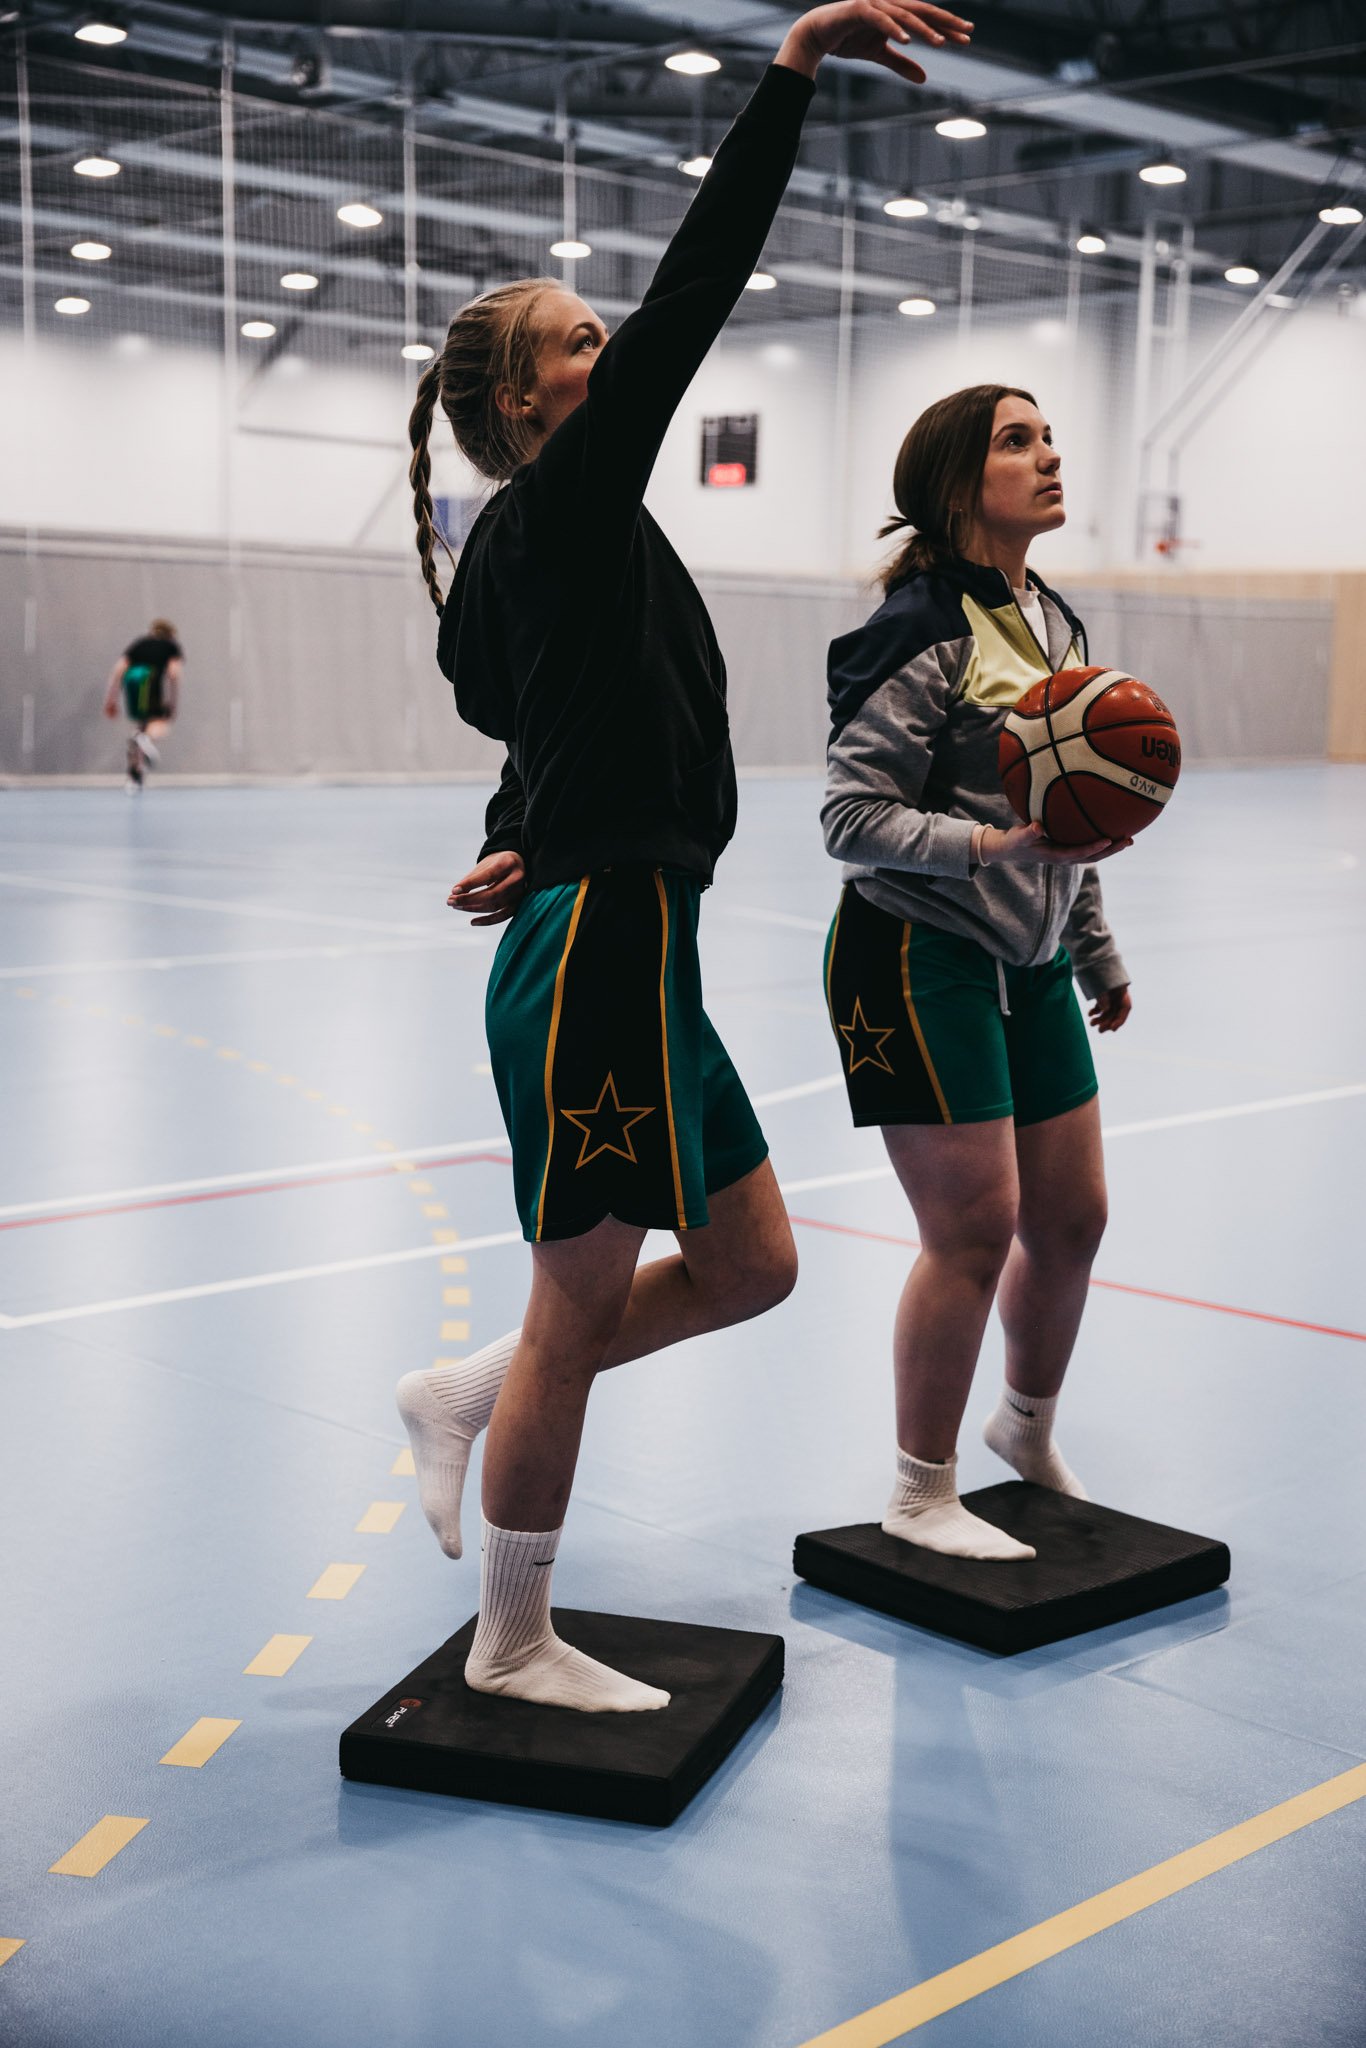 To unge jenter ikledd grønn shorts trener basket og forebygger skader på svarte balanseputer